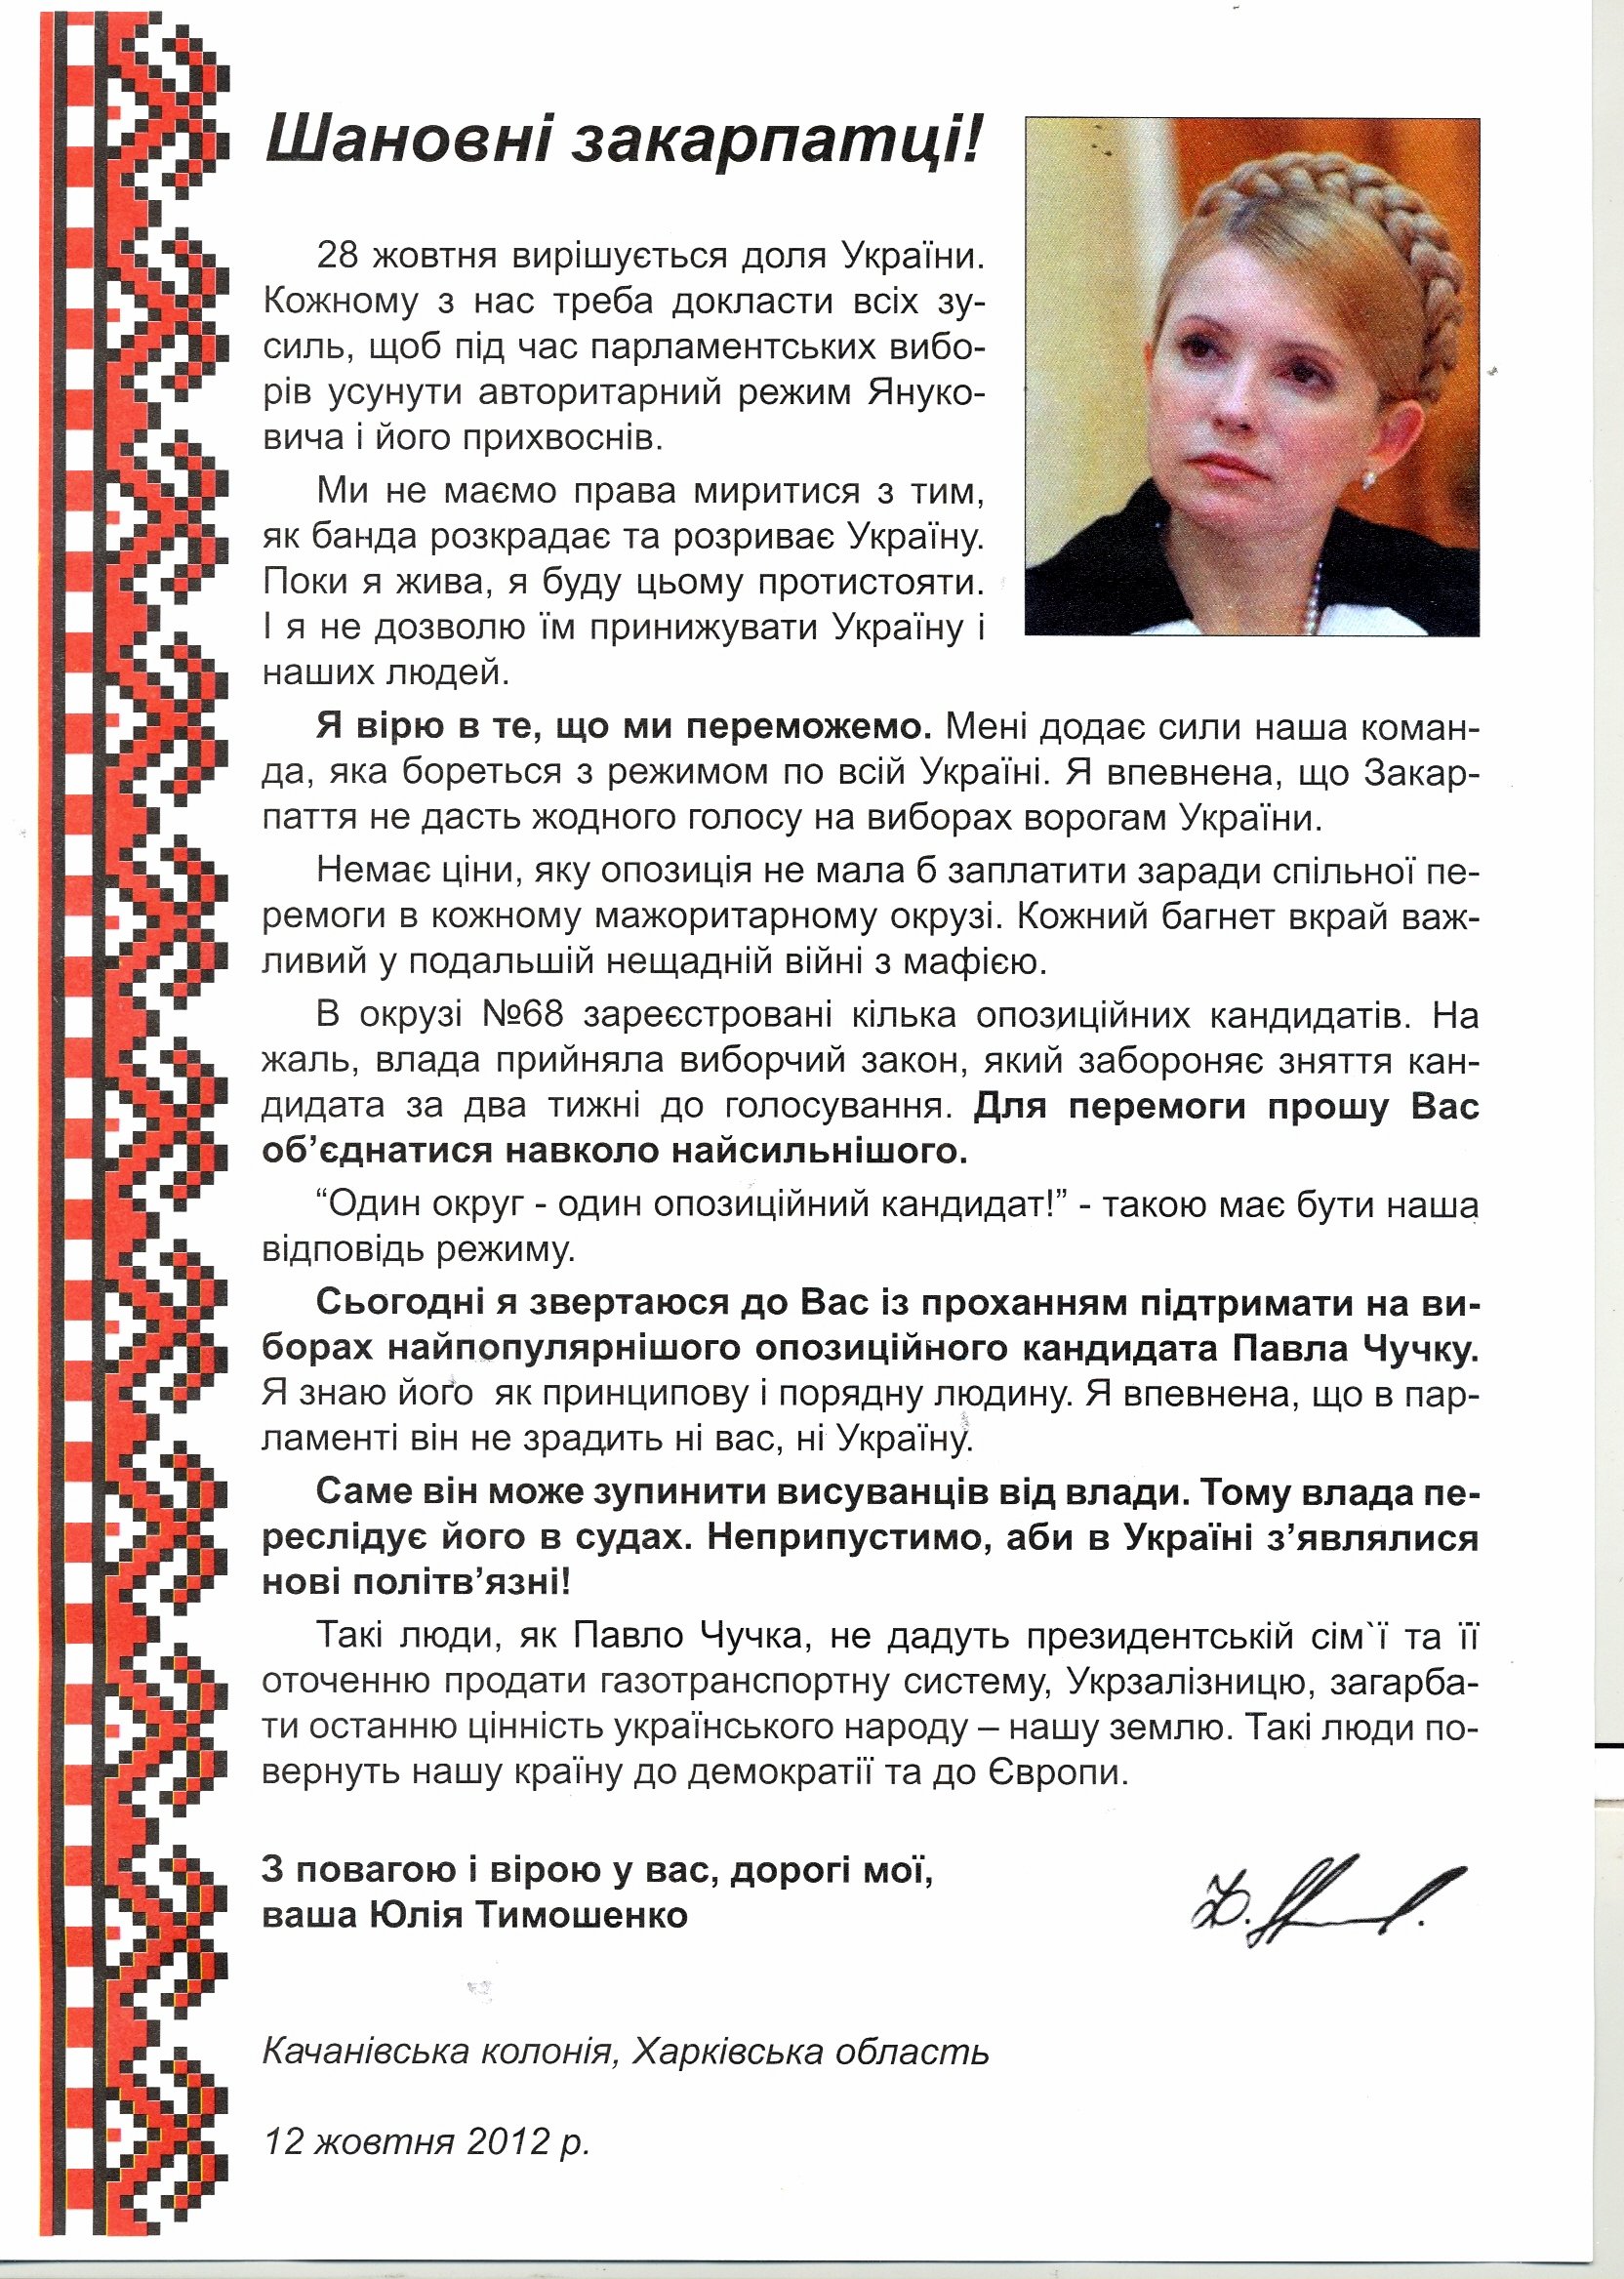 Об’єднана опозиція заперечила інформацію про підтримку Ю.Тимошенко кандидата в народні депутати  по 68-му округу П.Чучки 